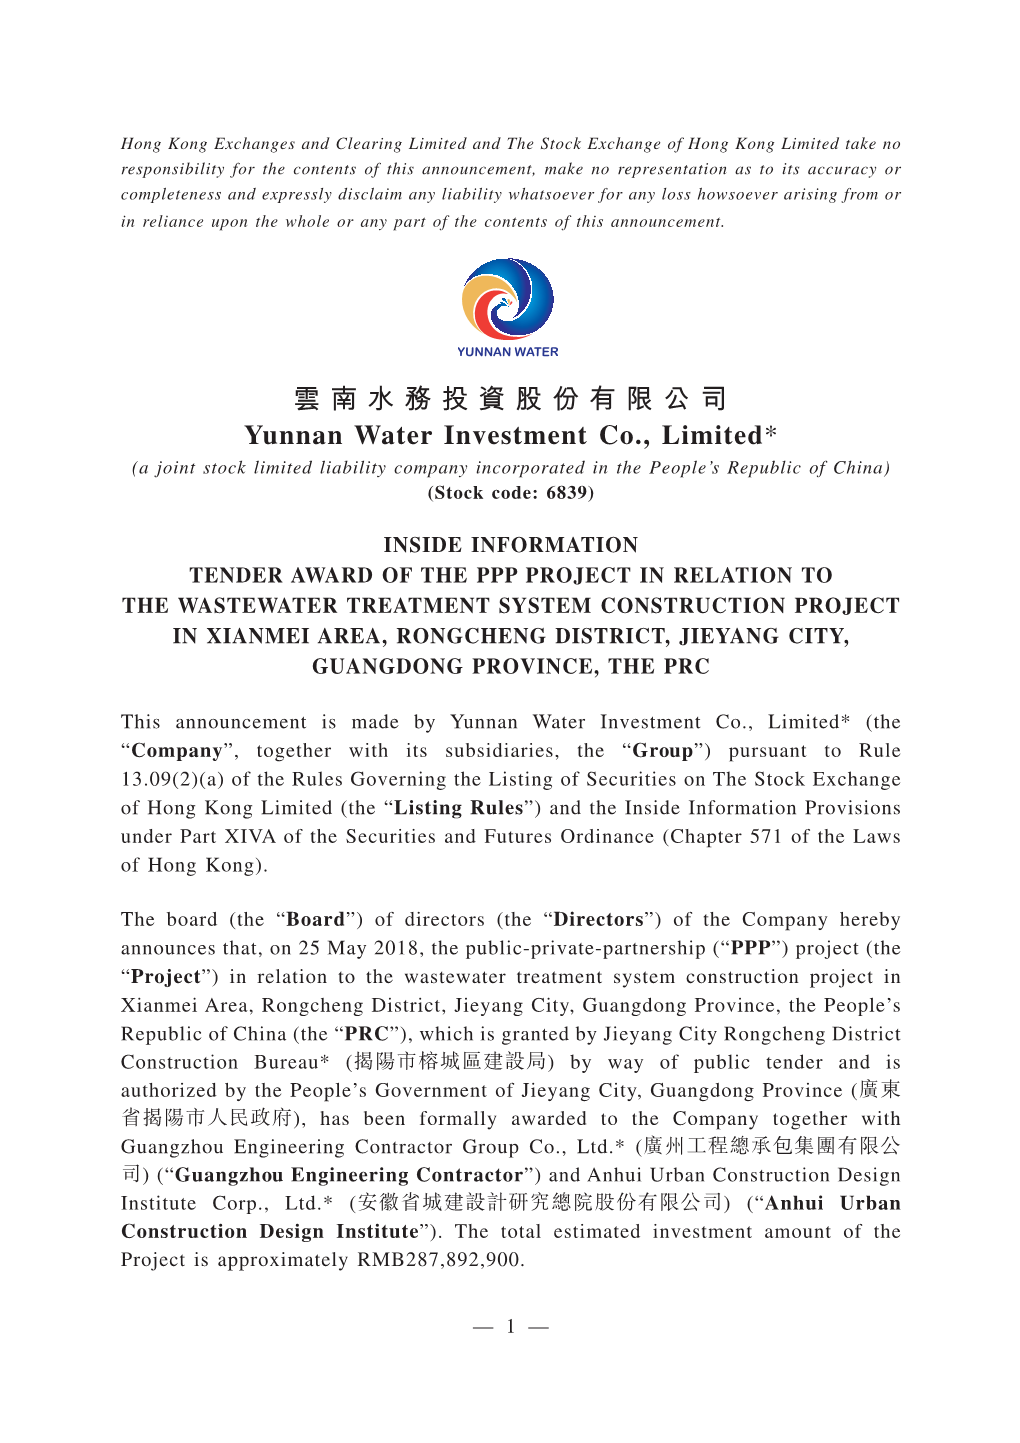 雲南水務投資股份有限公司 Yunnan Water Investment Co., Limited* (A Joint Stock Limited Liability Company Incorporated in the People’S Republic of China) (Stock Code: 6839)